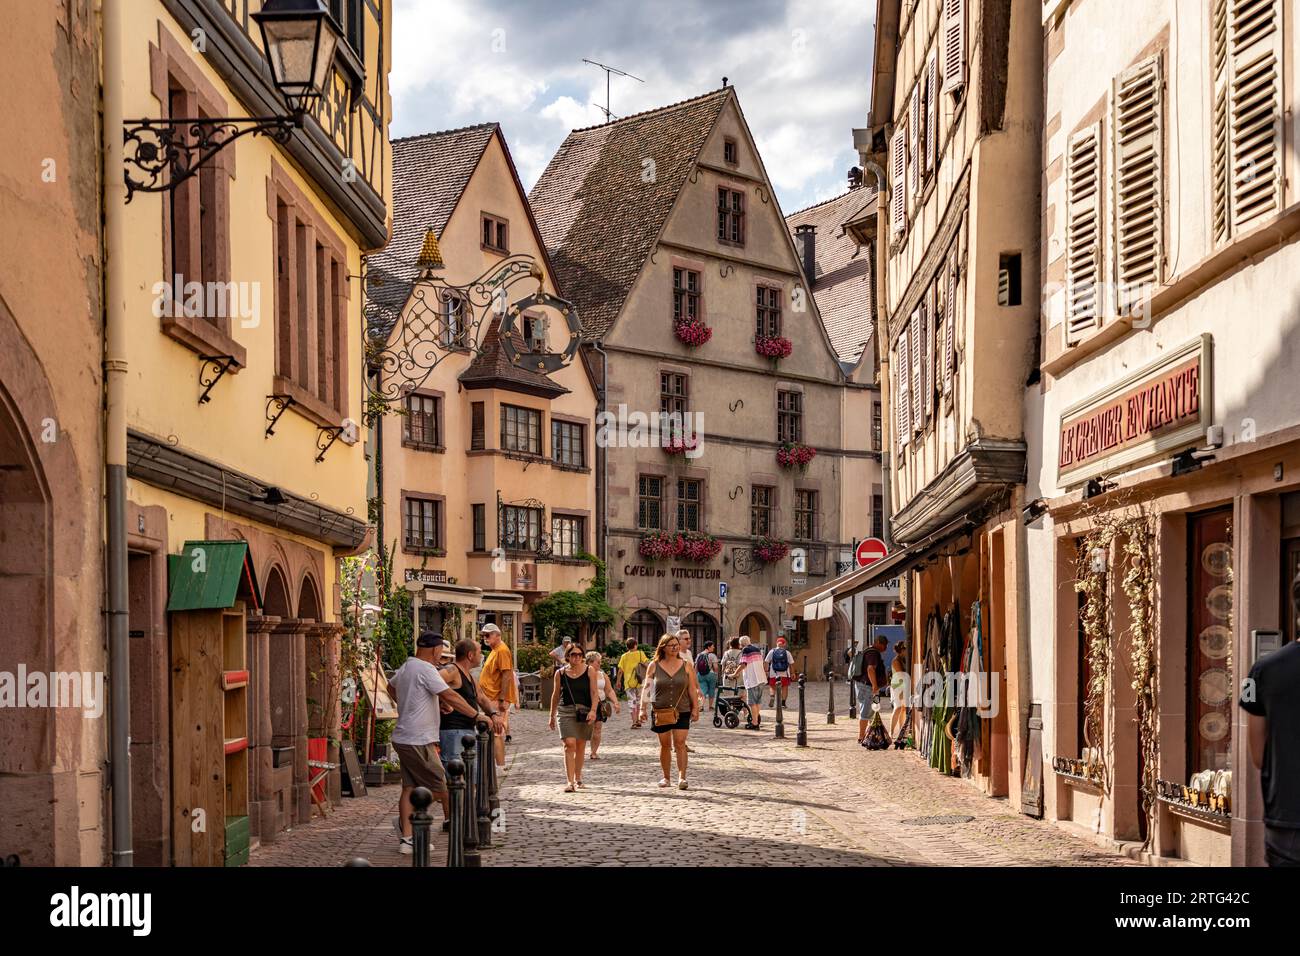 In der historischen Altstadt von Kaysersberg, Elsass, Frankreich | die historische Altstadt in Kaysersberg, Elsass, Frankreich Stockfoto